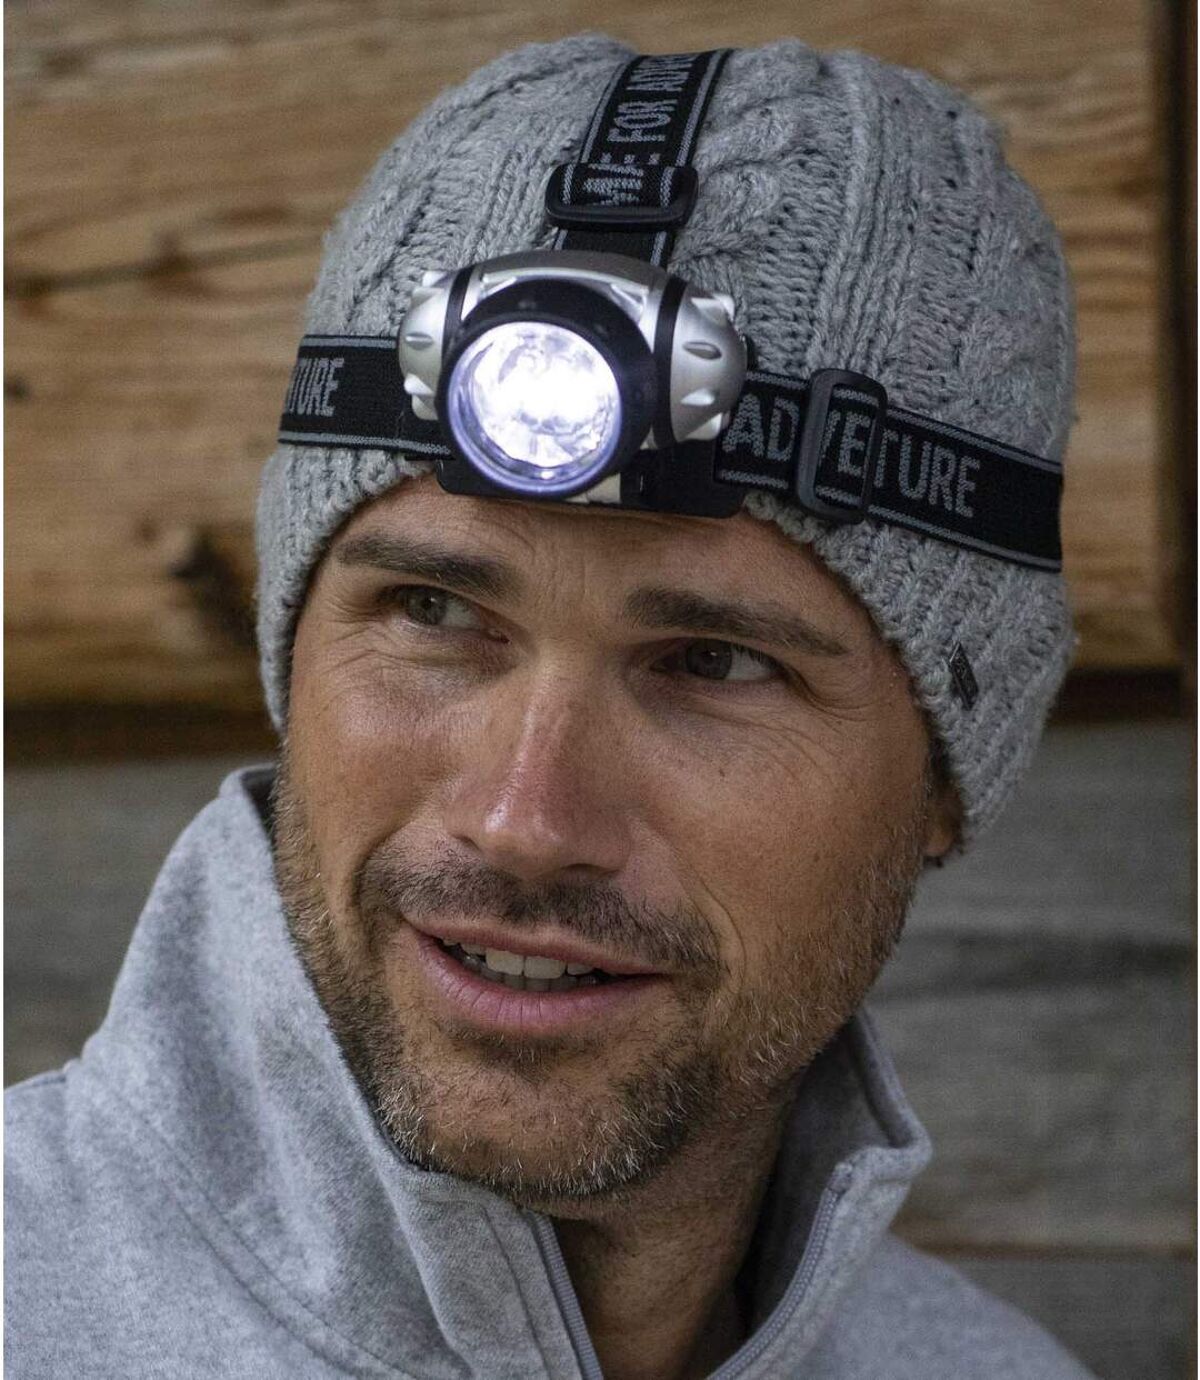 Men's Adventure Headlamp Atlas For Men